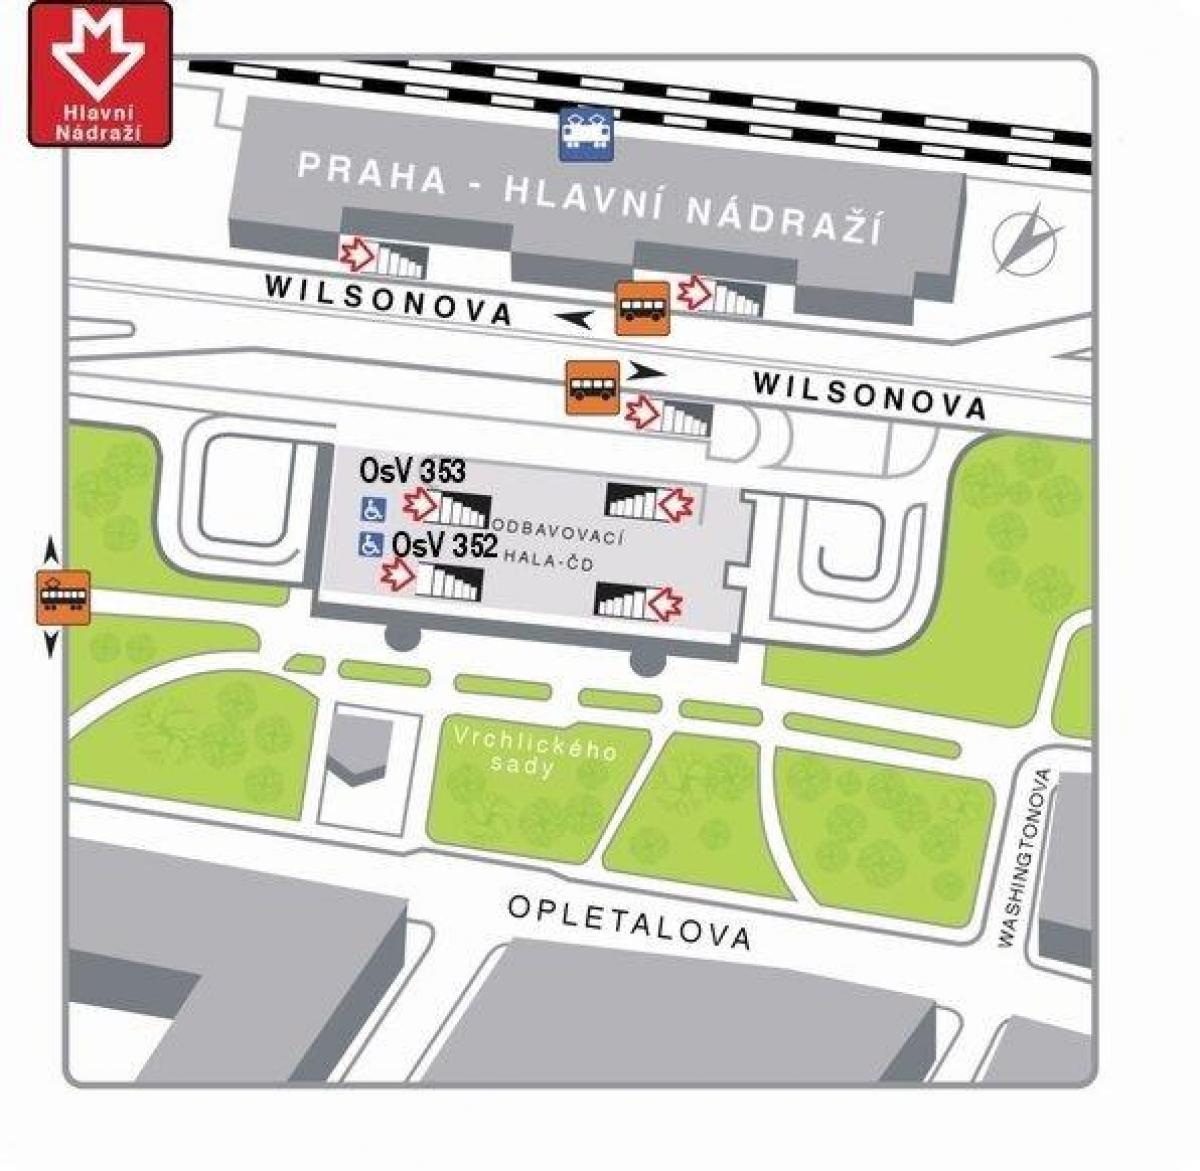 карта главного железнодорожного вокзала Праги